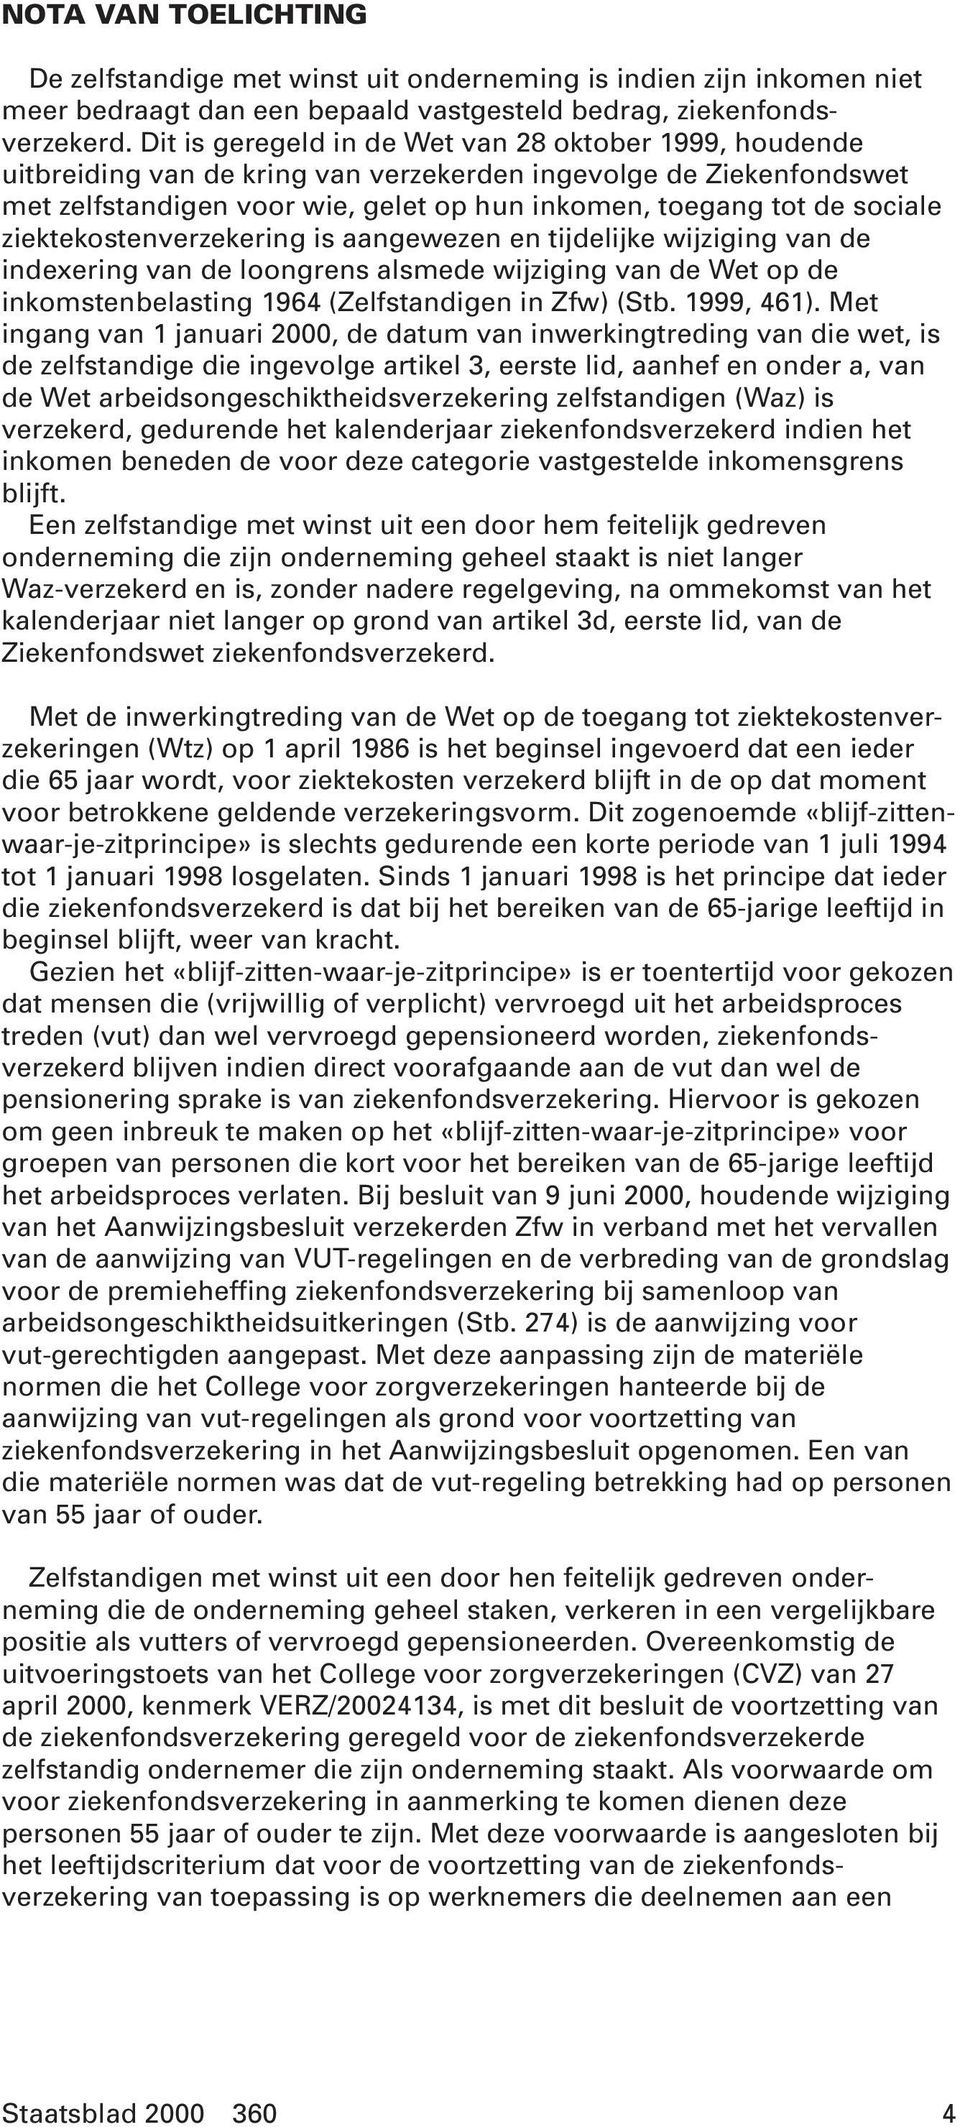 ziektekostenverzekering is aangewezen en tijdelijke wijziging van de indexering van de loongrens alsmede wijziging van de Wet op de inkomstenbelasting 1964 (Zelfstandigen in Zfw) (Stb. 1999, 461).